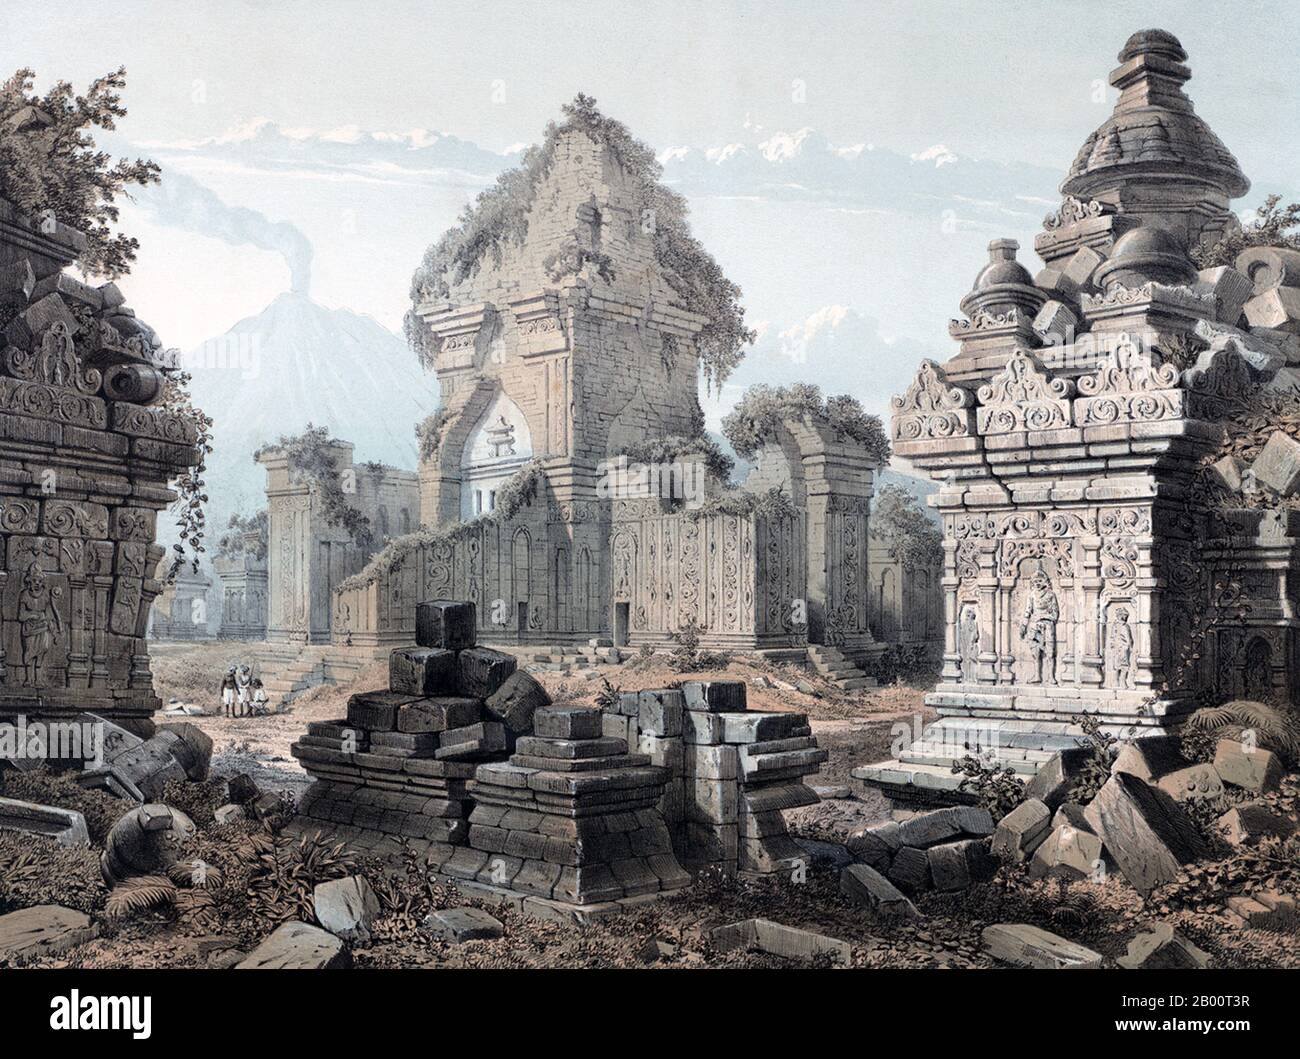 Indonesia: 'Rovine di Prambanan, Giava'. Litografia colorata di Cornelis Springer (1817-1891), 1852. Questa litografia colorata raffigura le rovine del tempio di Prambanan nel centro di Giava, il più grande tempio indù mai costruito in Indonesia e uno dei più grandi del sud-est asiatico. Dedicato al trionfato di Shiva, Brahma e Vishnu, il tempio fu costruito intorno al 850 d.C. dalla dinastia Mataram, ma abbandonato subito dopo la sua costruzione. La dinastia Mataram praticava aspetti sia dell'Induismo che del Buddismo, e il complesso del tempio comprende alcuni dei primi templi buddisti in Indonesia. Foto Stock